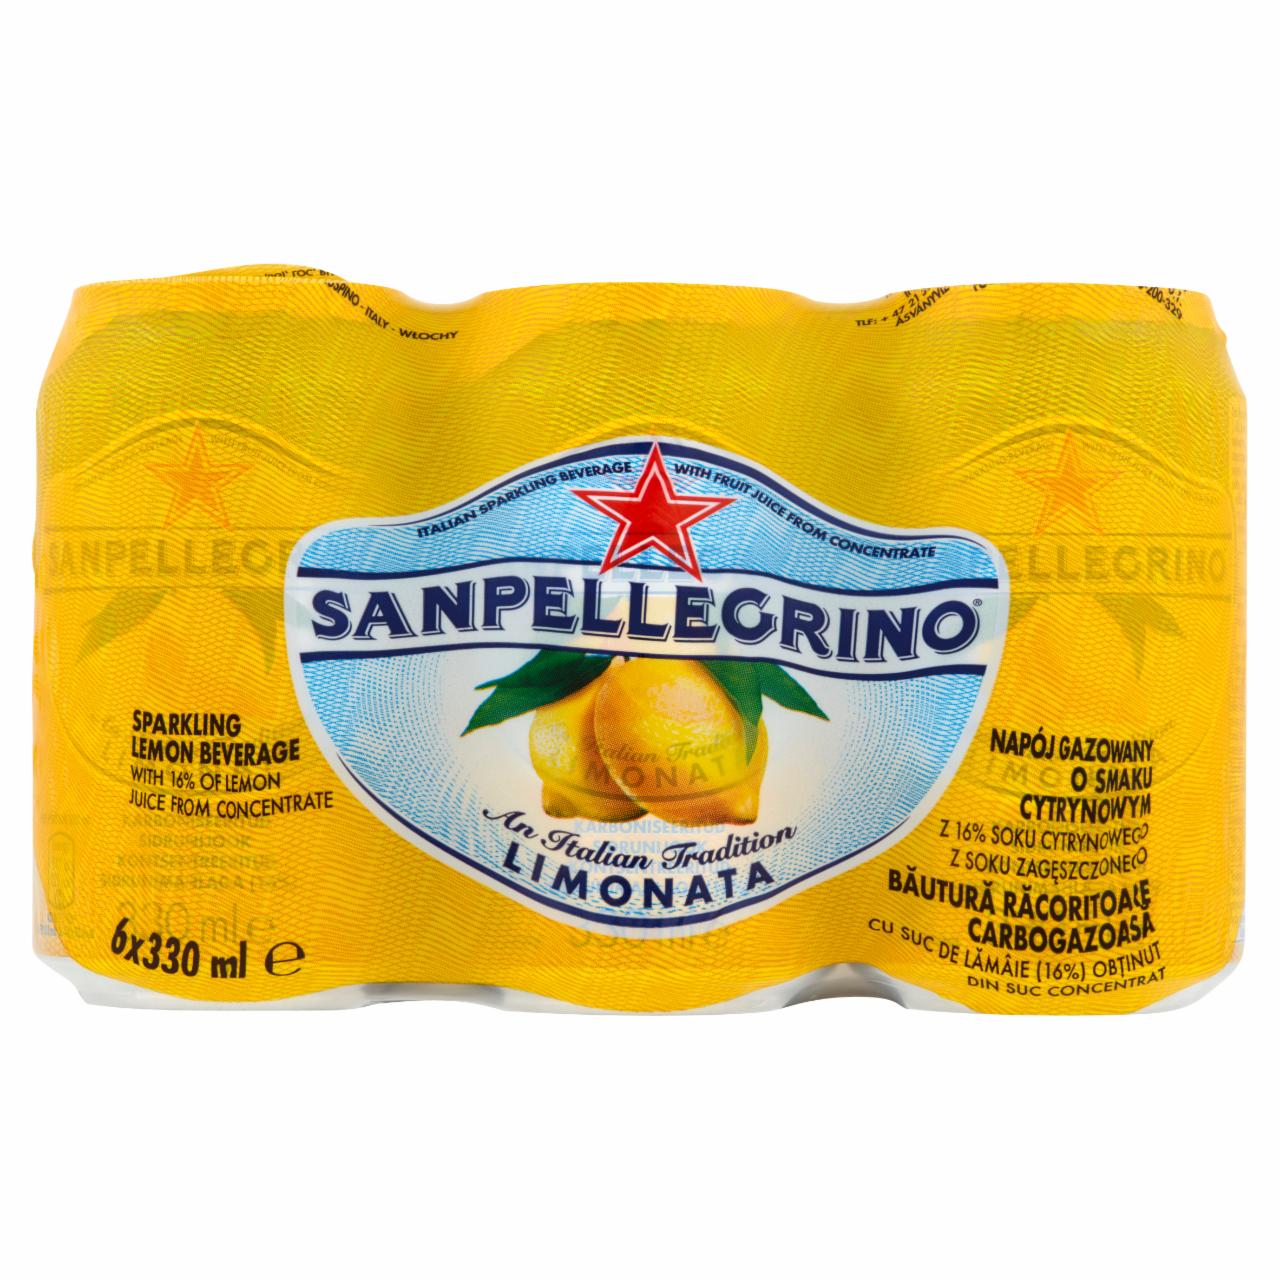 Zdjęcia - Sanpellegrino Limonata Napój gazowany o smaku cytrynowym 6 x 330 ml